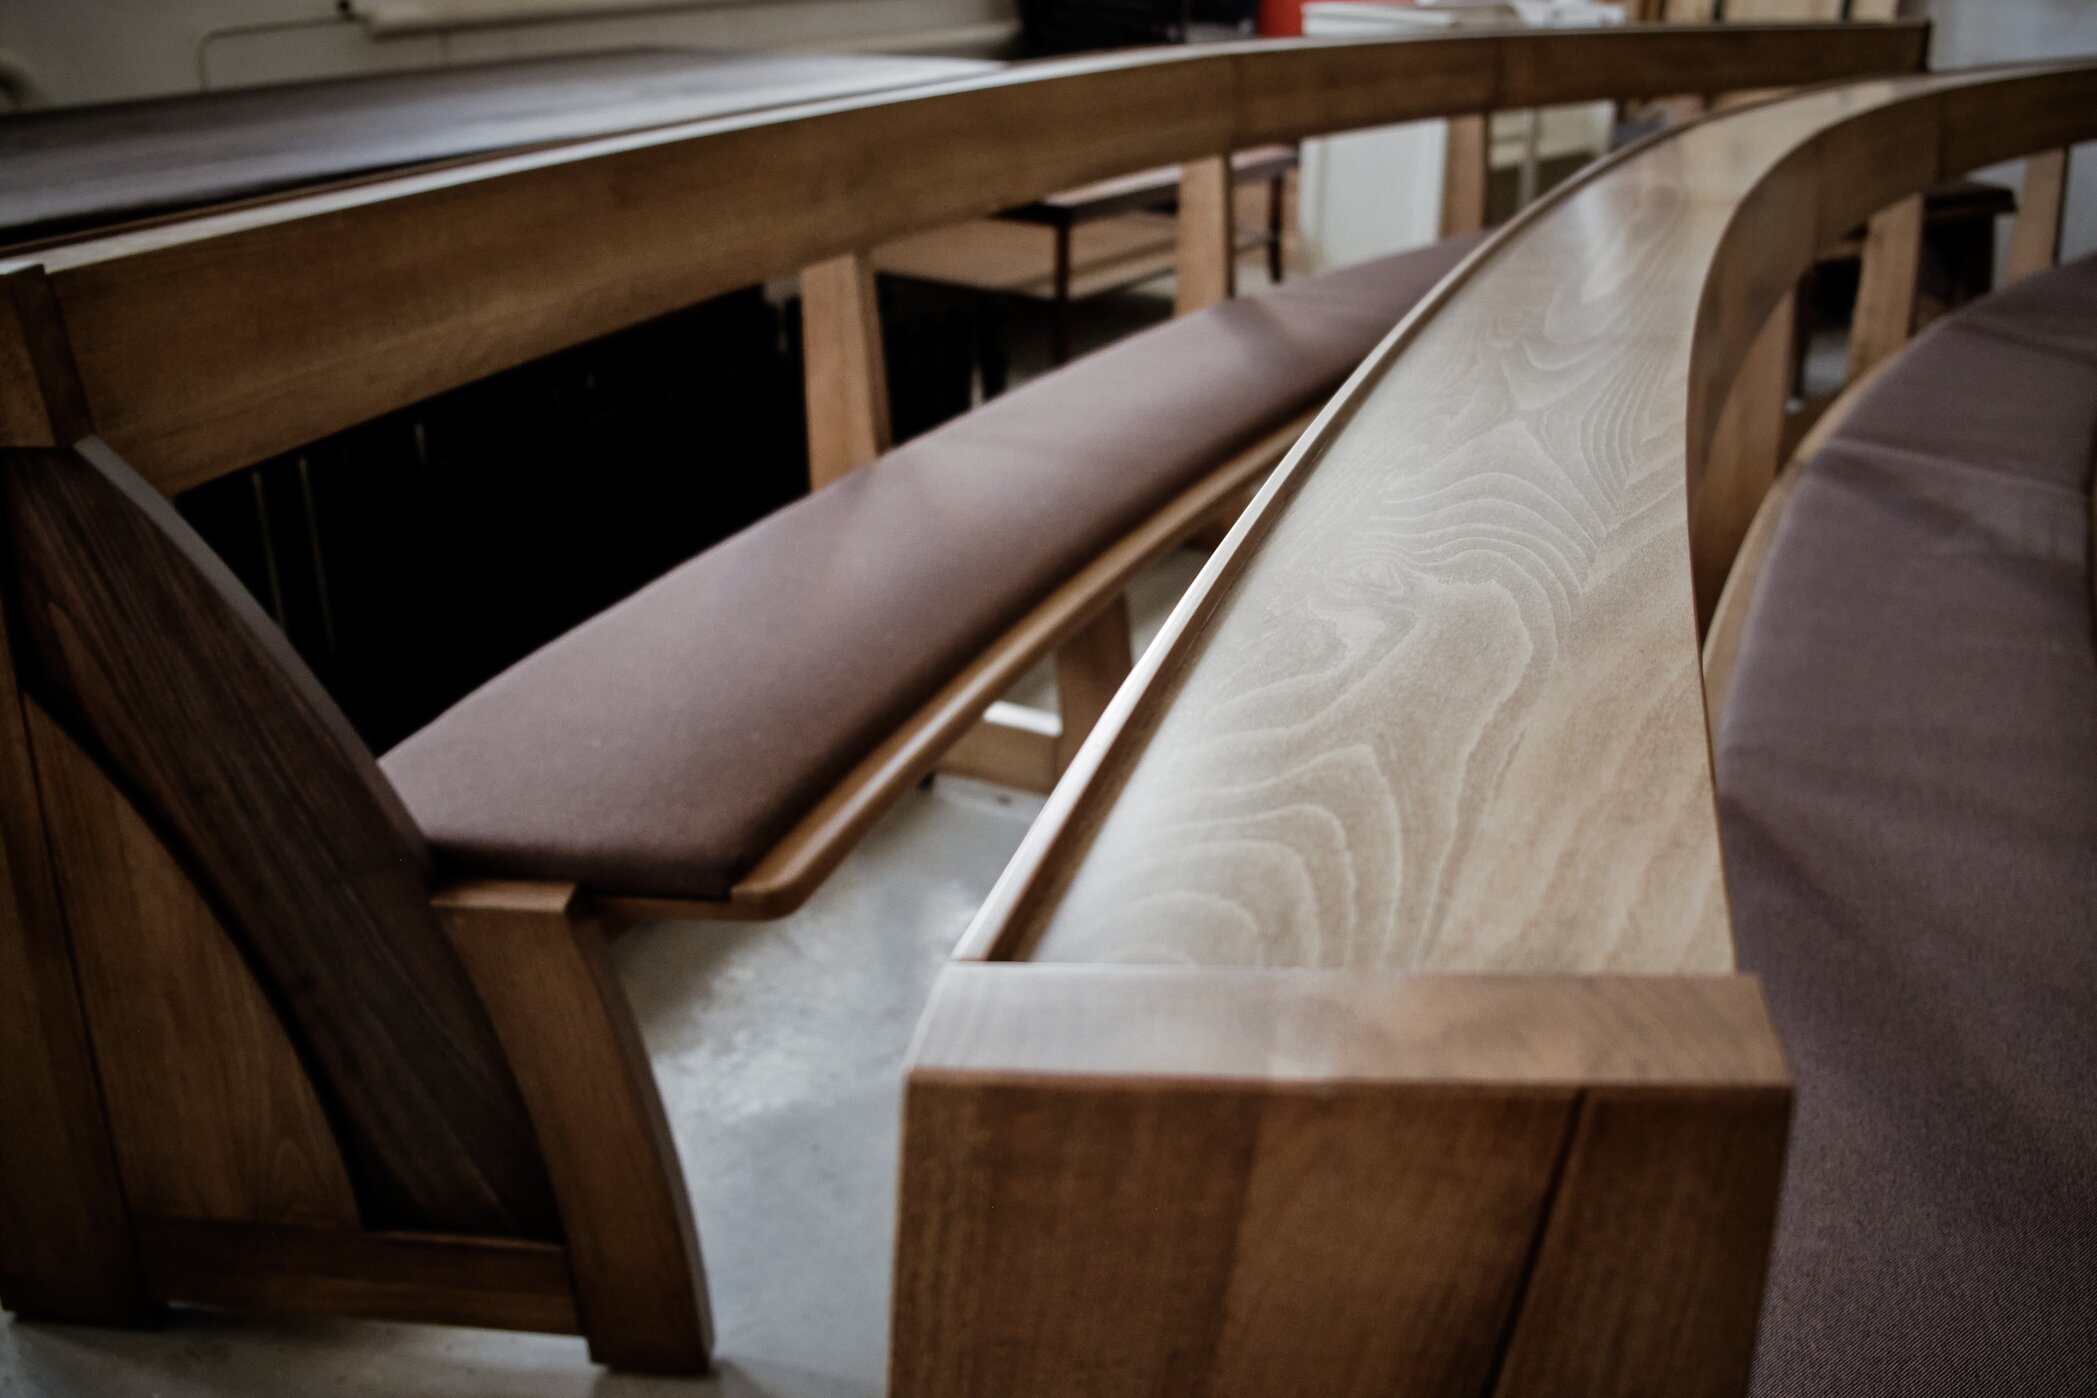 Designul minimalist al stranei de biserică al lui Zoe combină funcționalitatea și calitatea. Vedere a băncii finisate cu o pernă de scaun